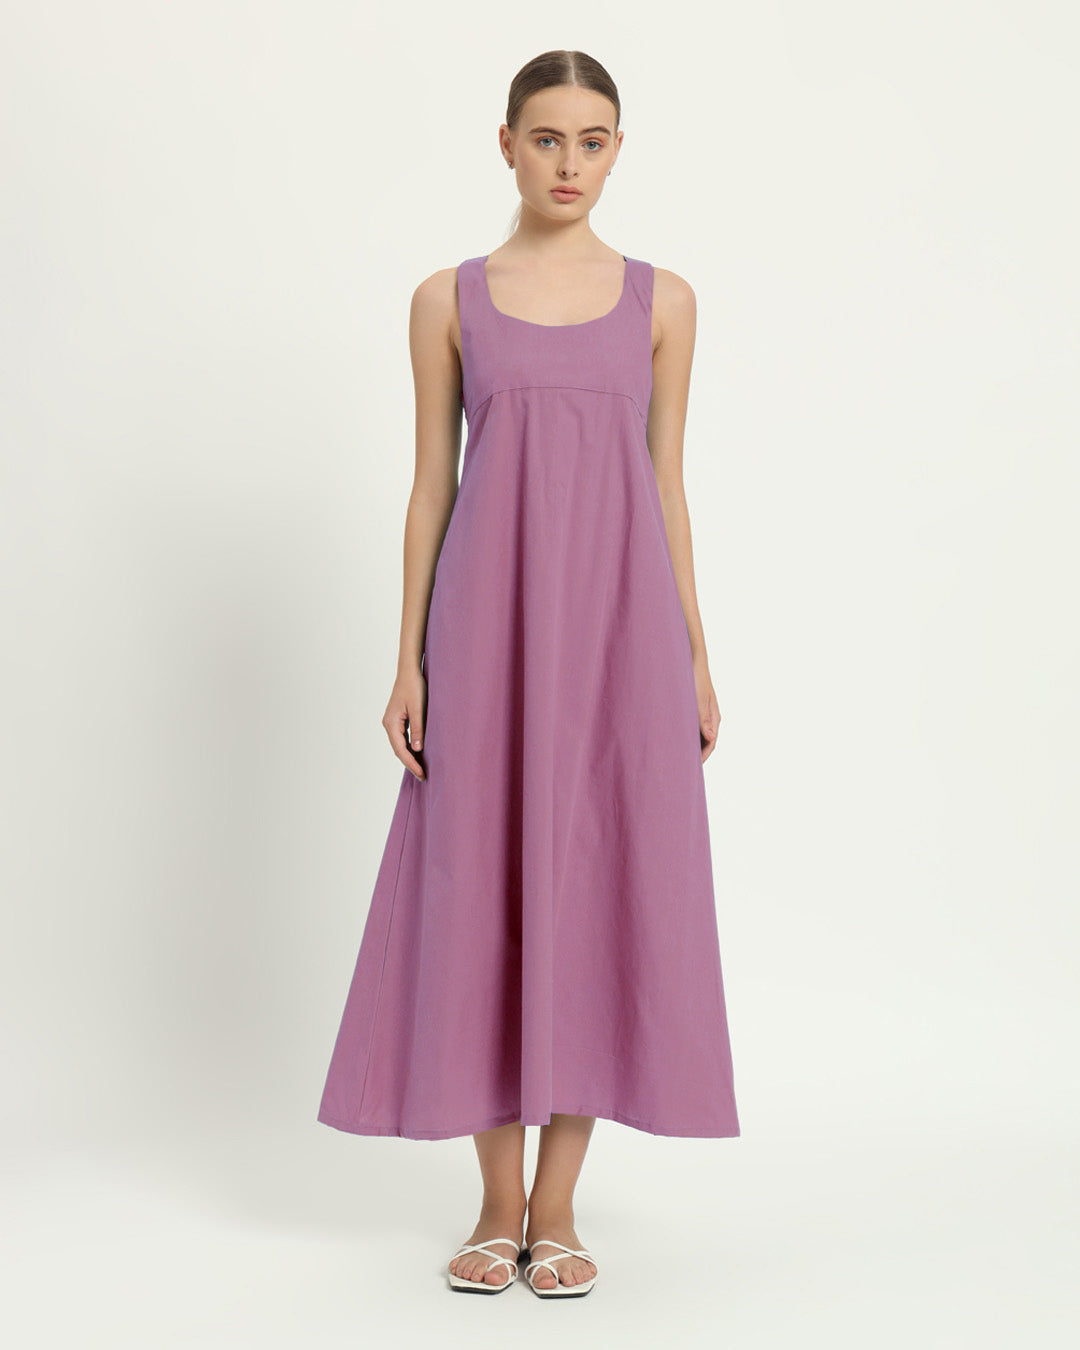 The Magdala Purple Swirl Cotton Dress